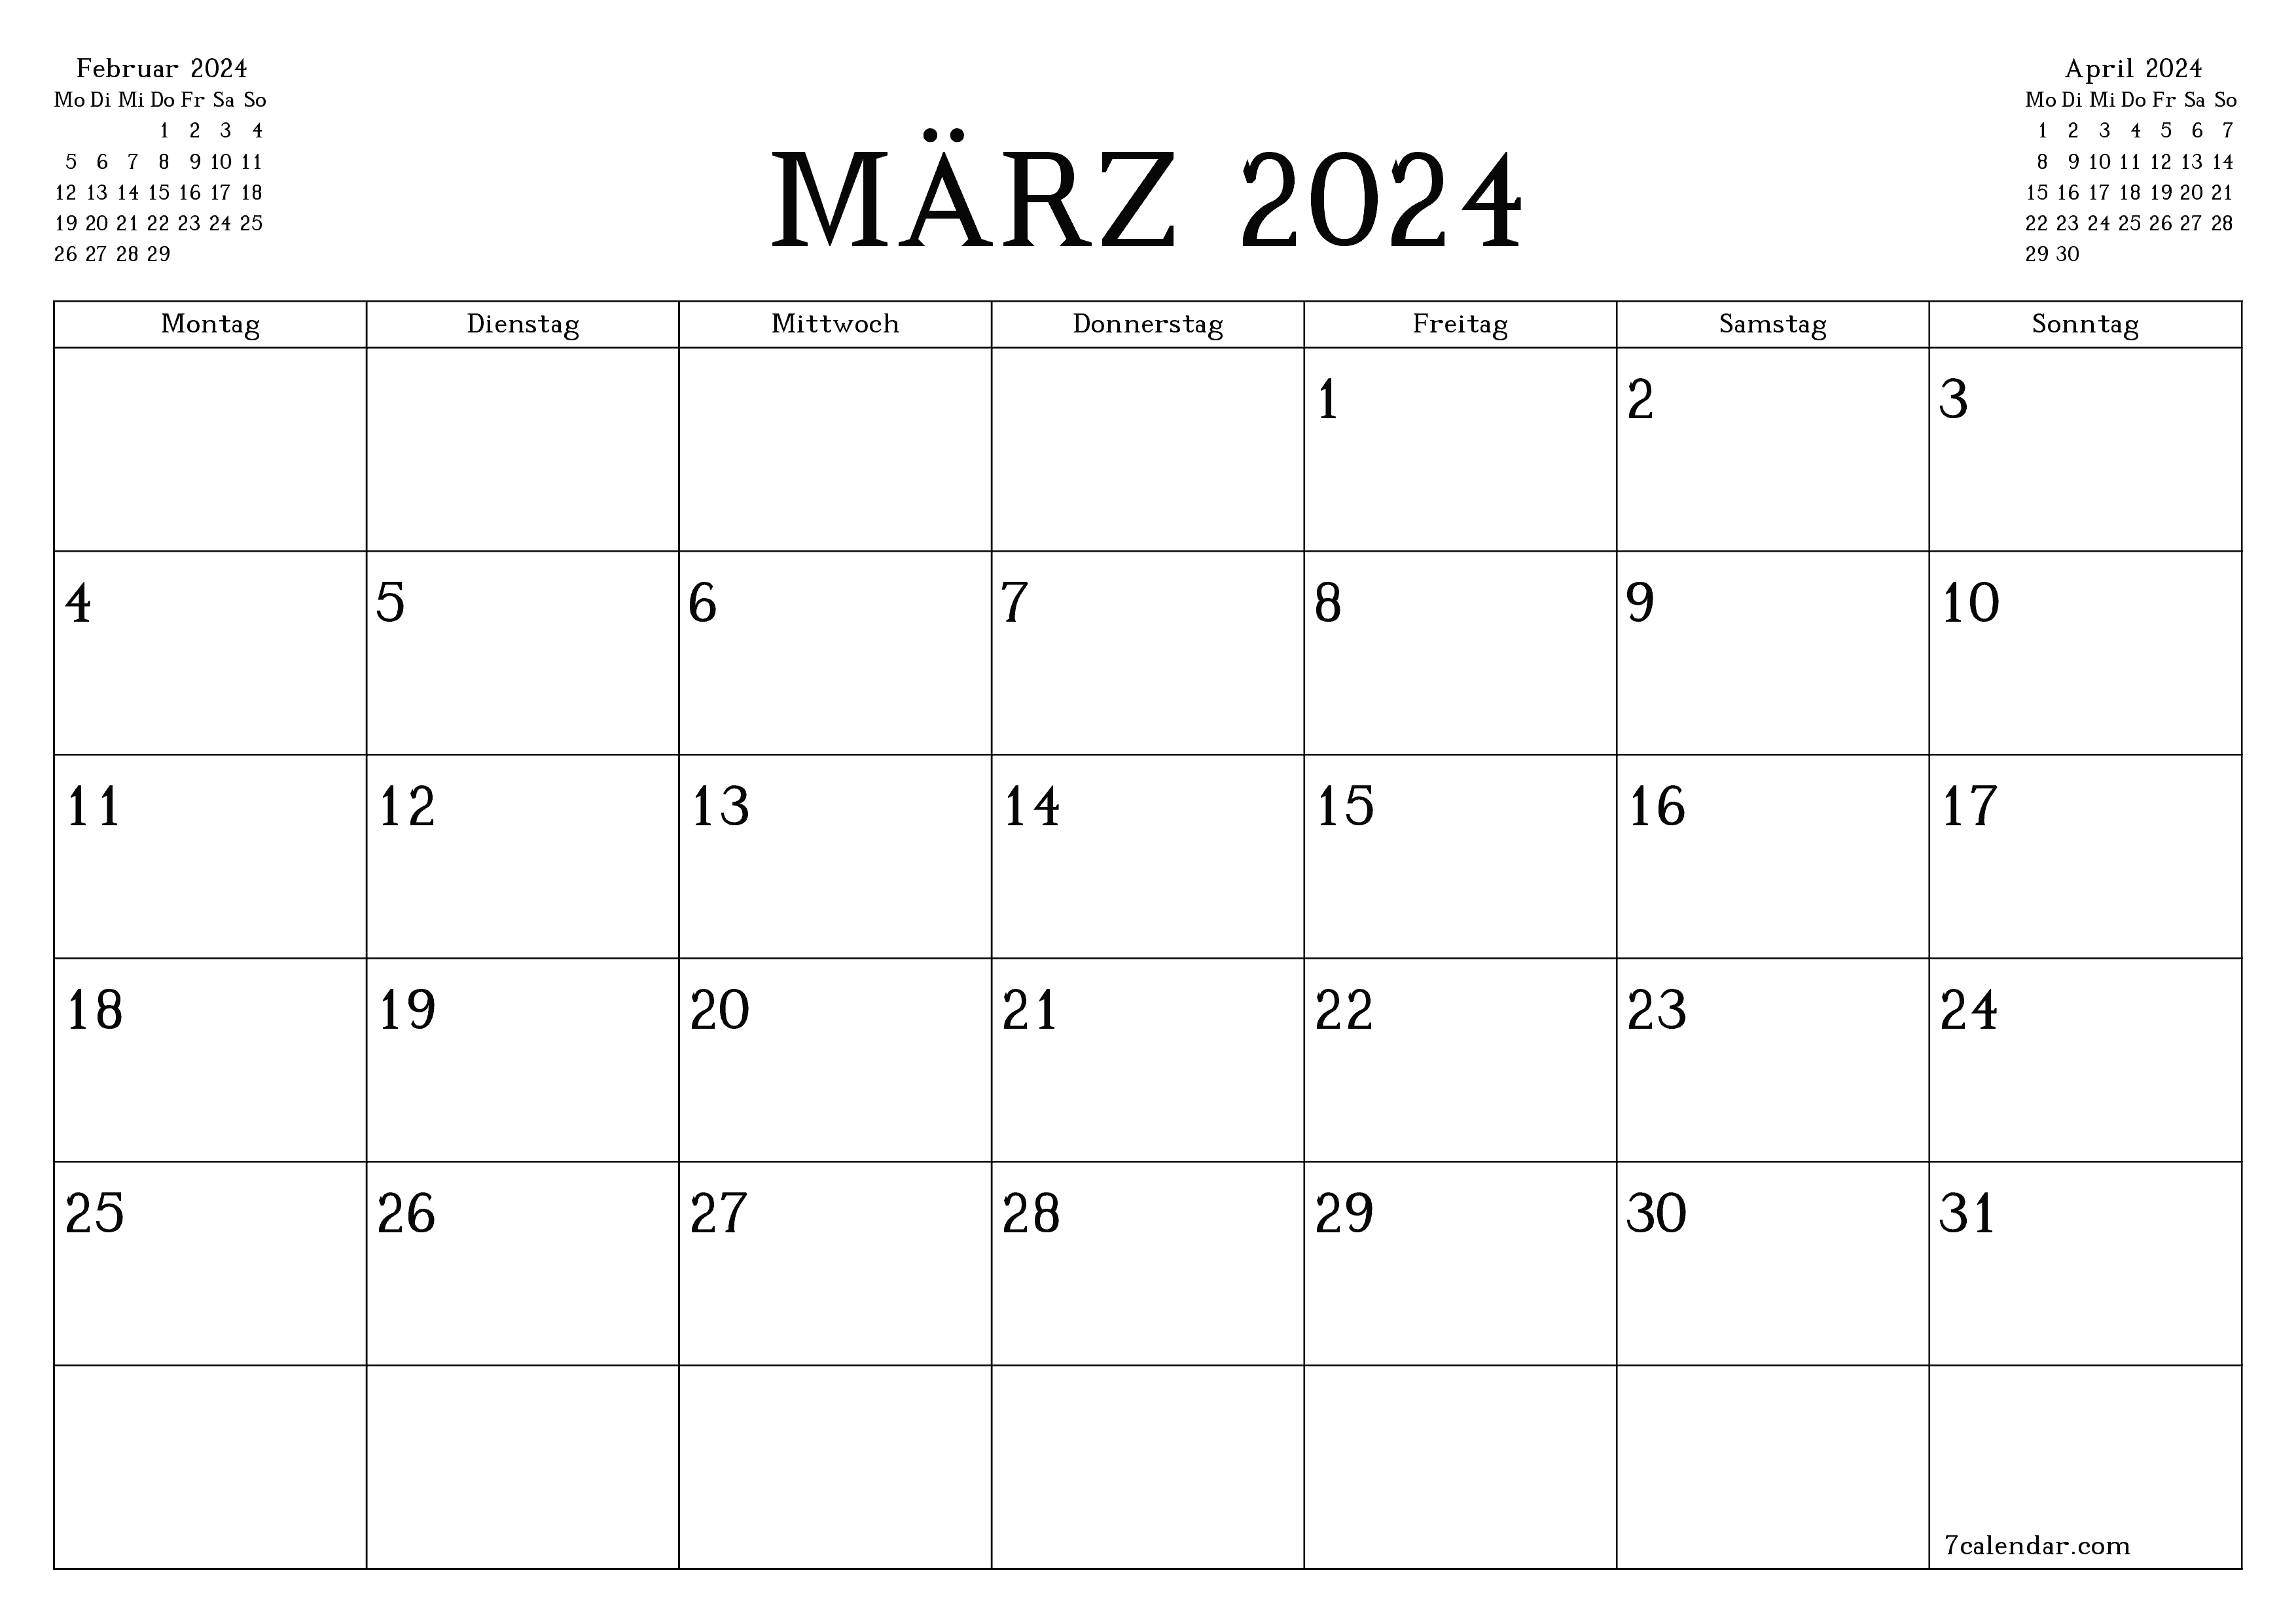 Monatsplaner für Monat März 2024 mit Notizen leeren, speichern und als PDF PNG German - 7calendar.com drucken